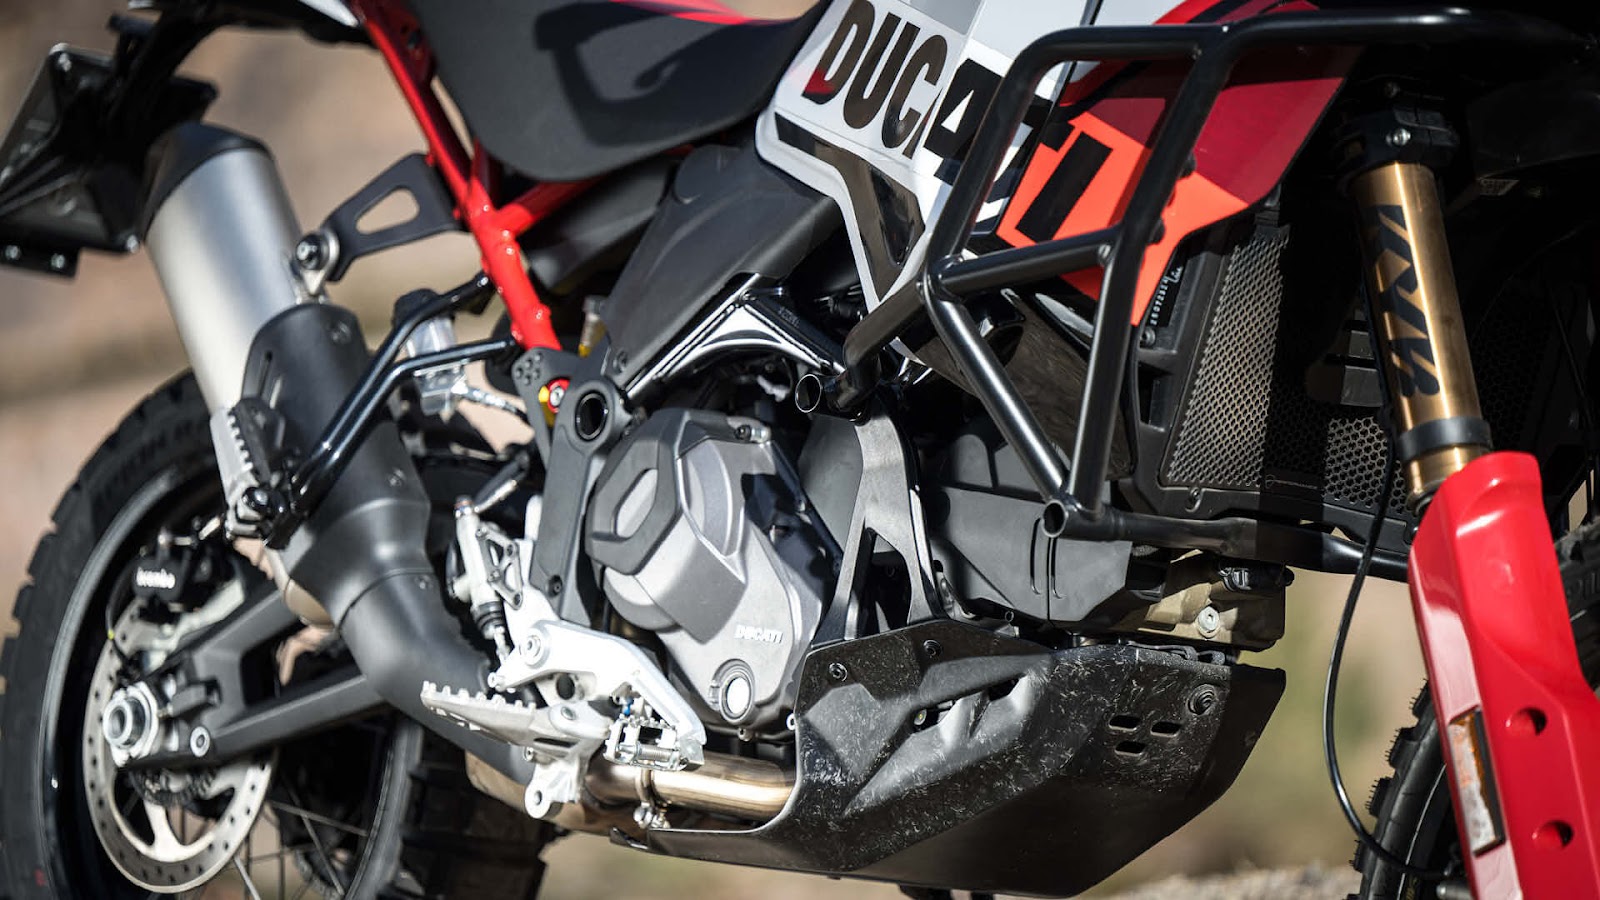 Proteção de cárter em carbono, ou não estivéssemos a falar de uma Ducati.